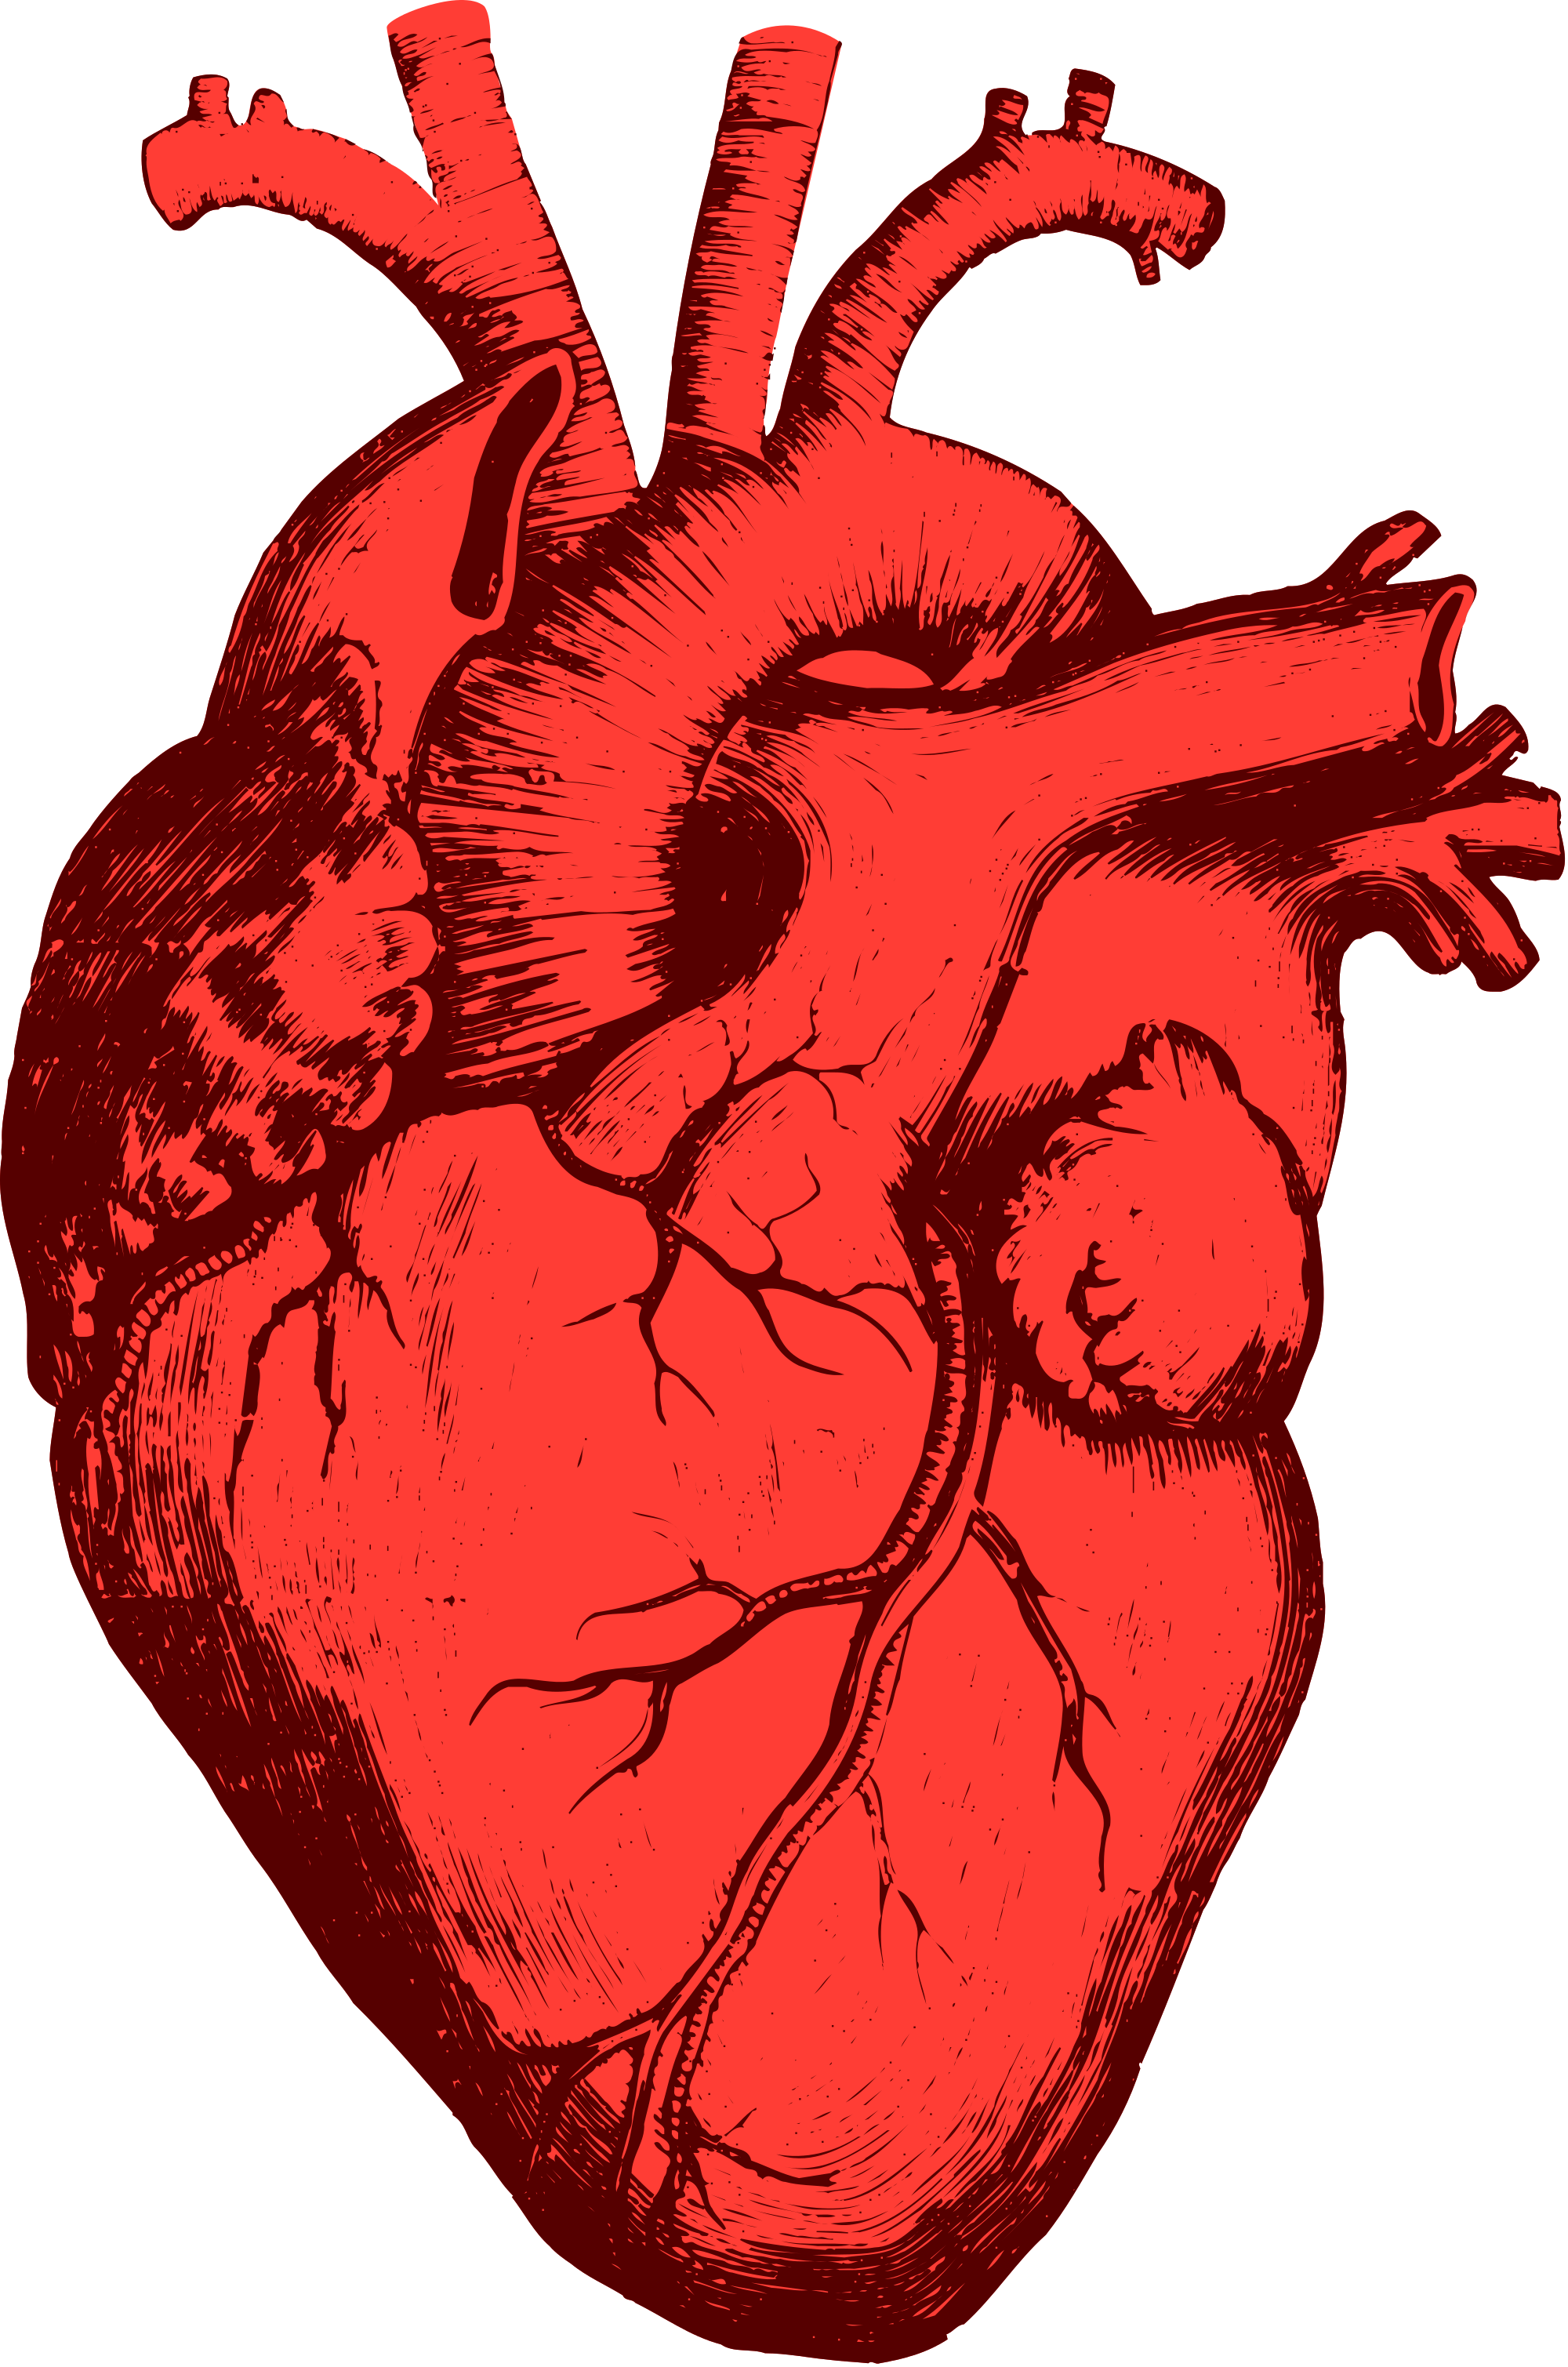 Foto de PNG do coração humano vermelho